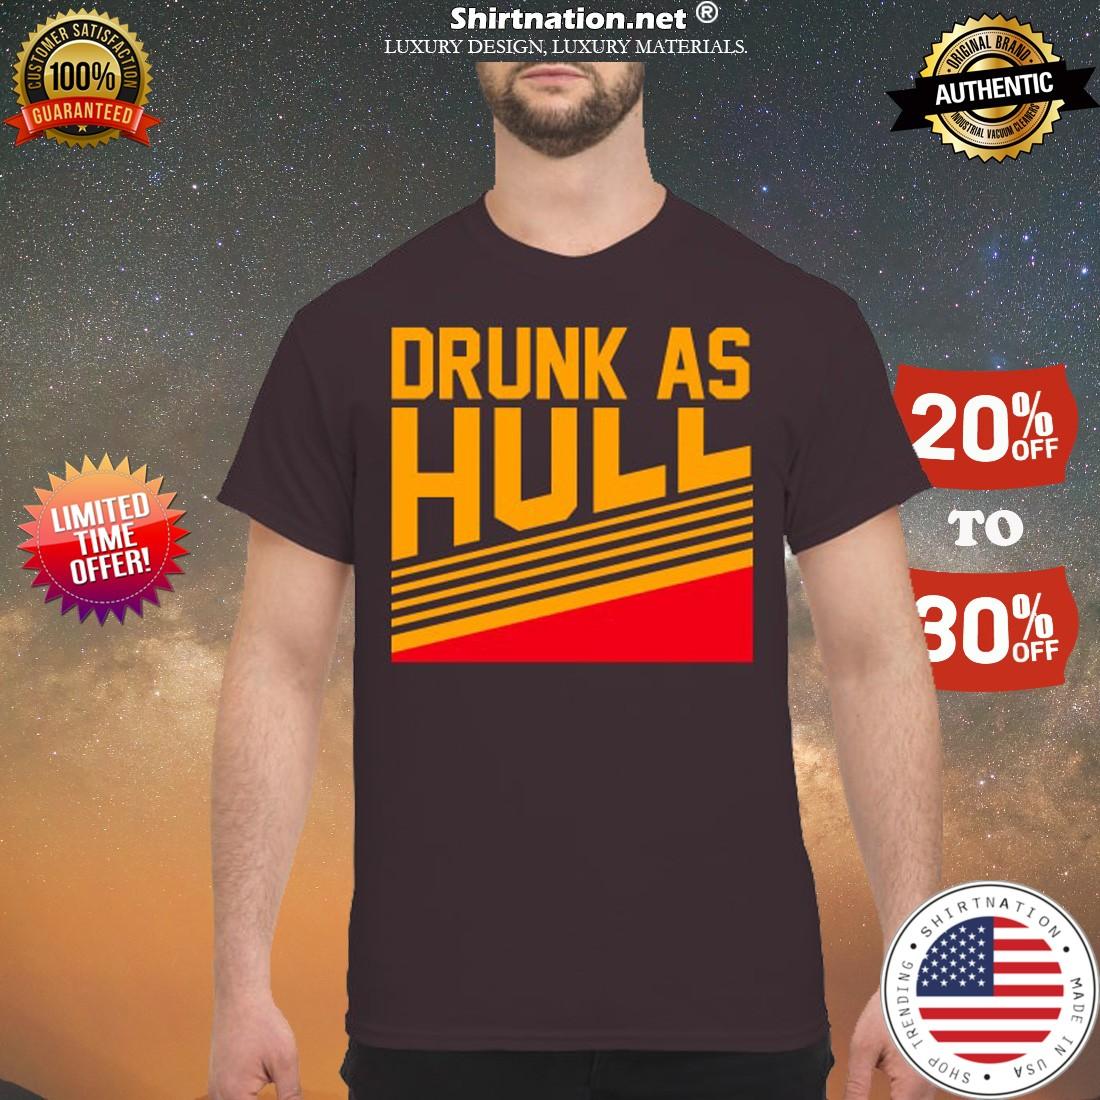 Drunk as hull shirt